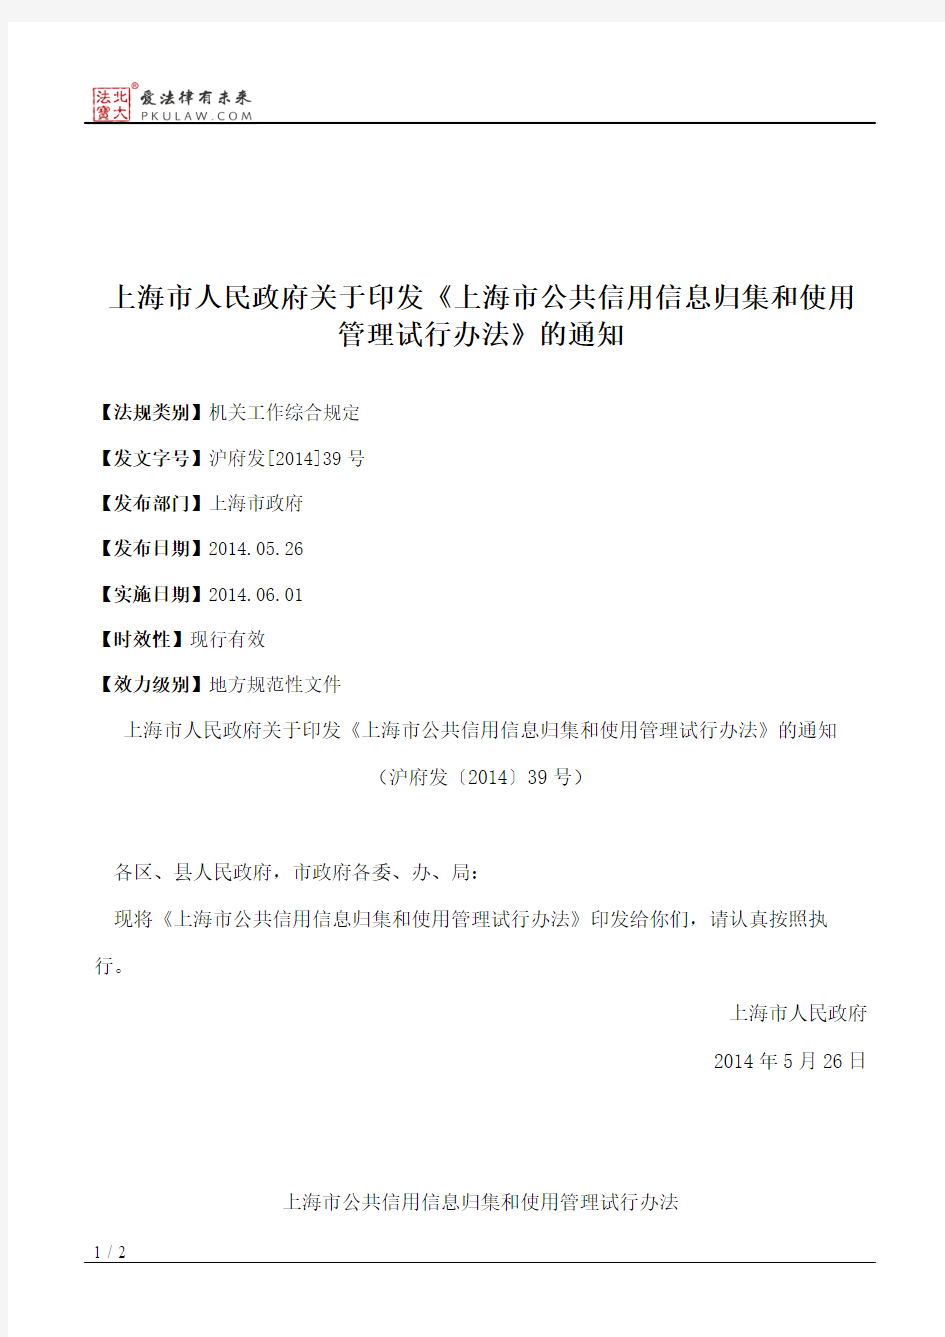 上海市人民政府关于印发《上海市公共信用信息归集和使用管理试行